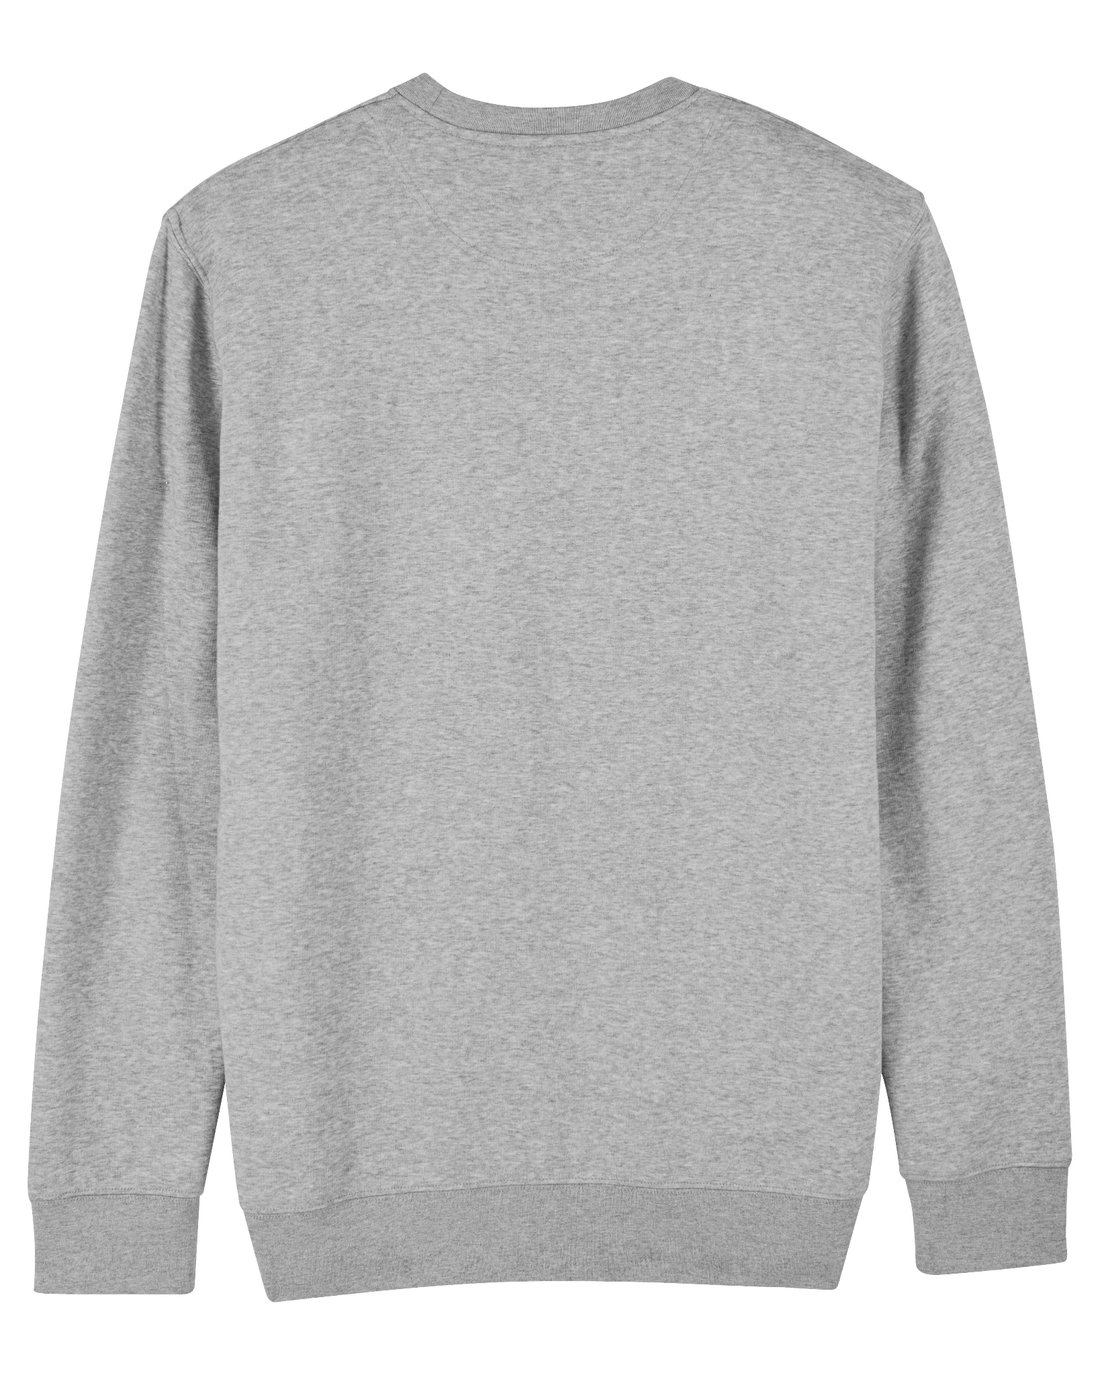 Grey Skater Sweatshirt, Surfer Dog Back Print